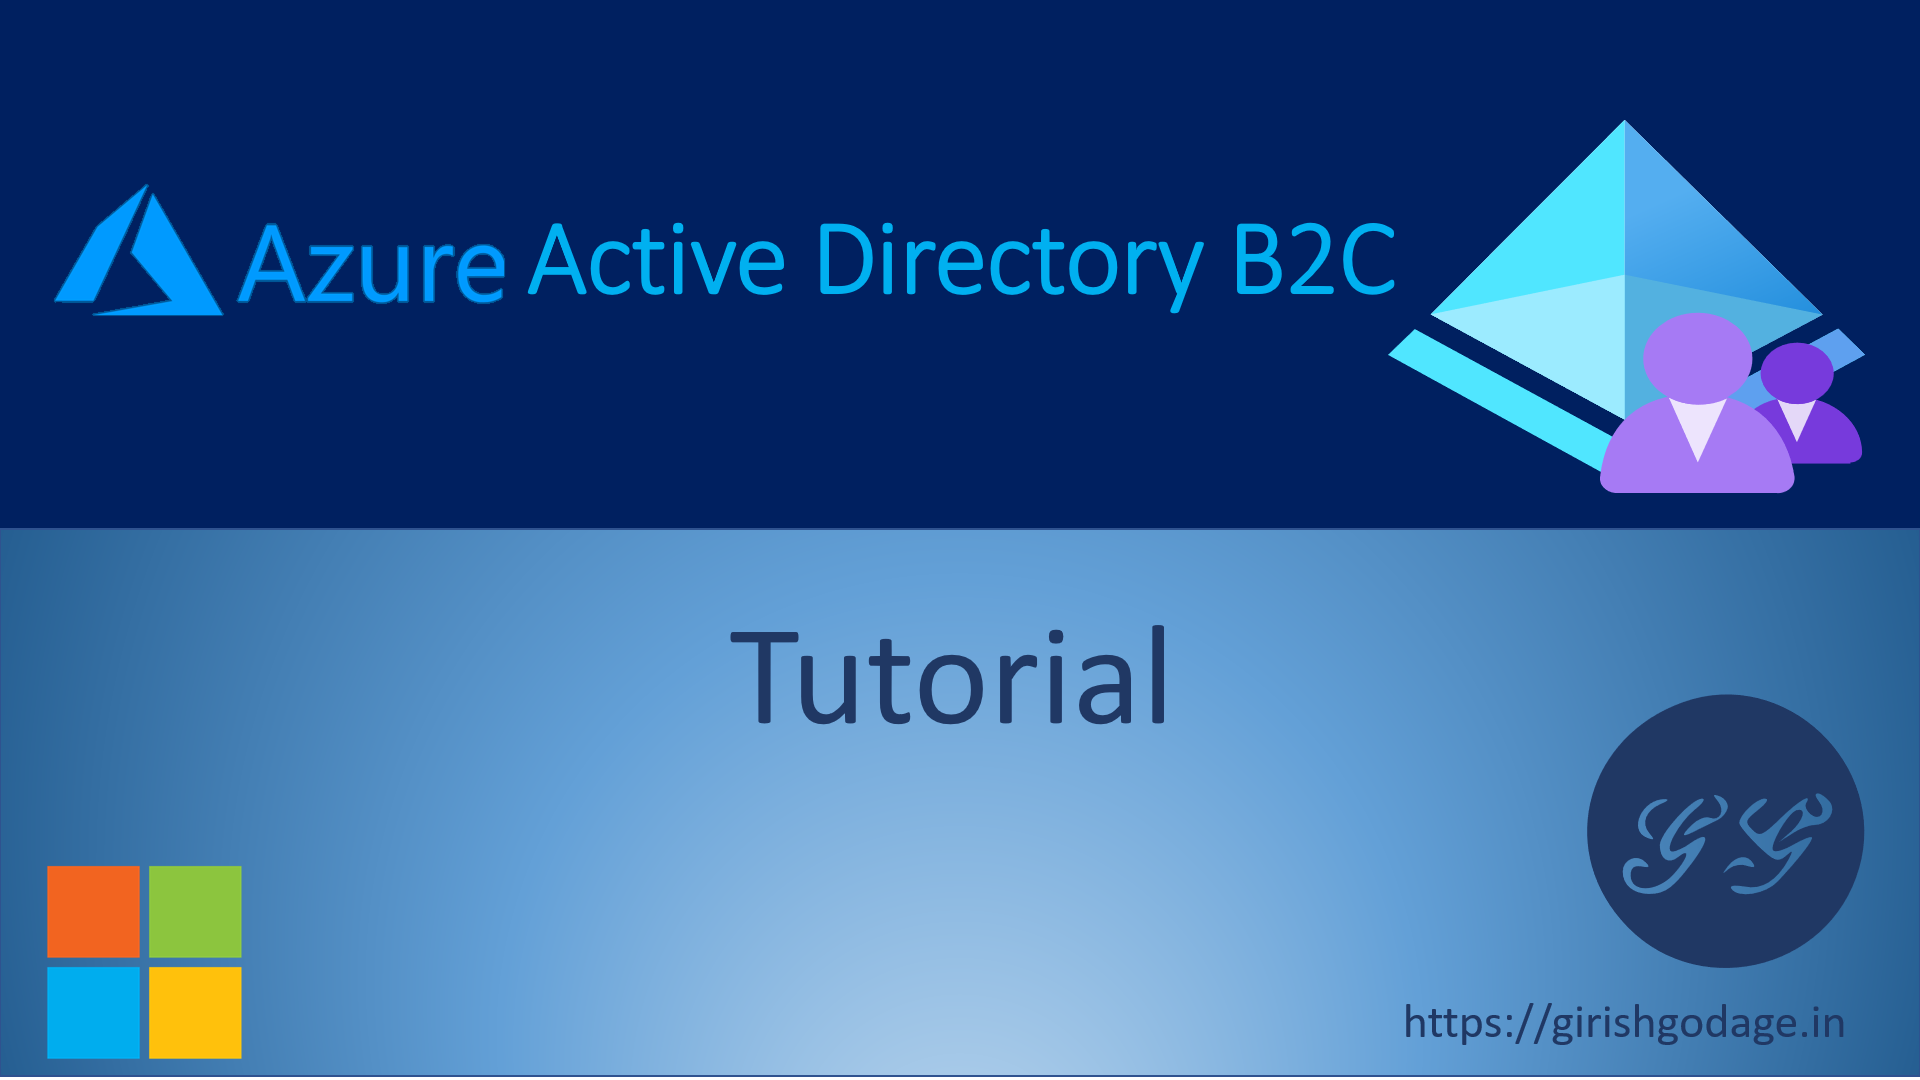 Create an Azure AD B2C tenant